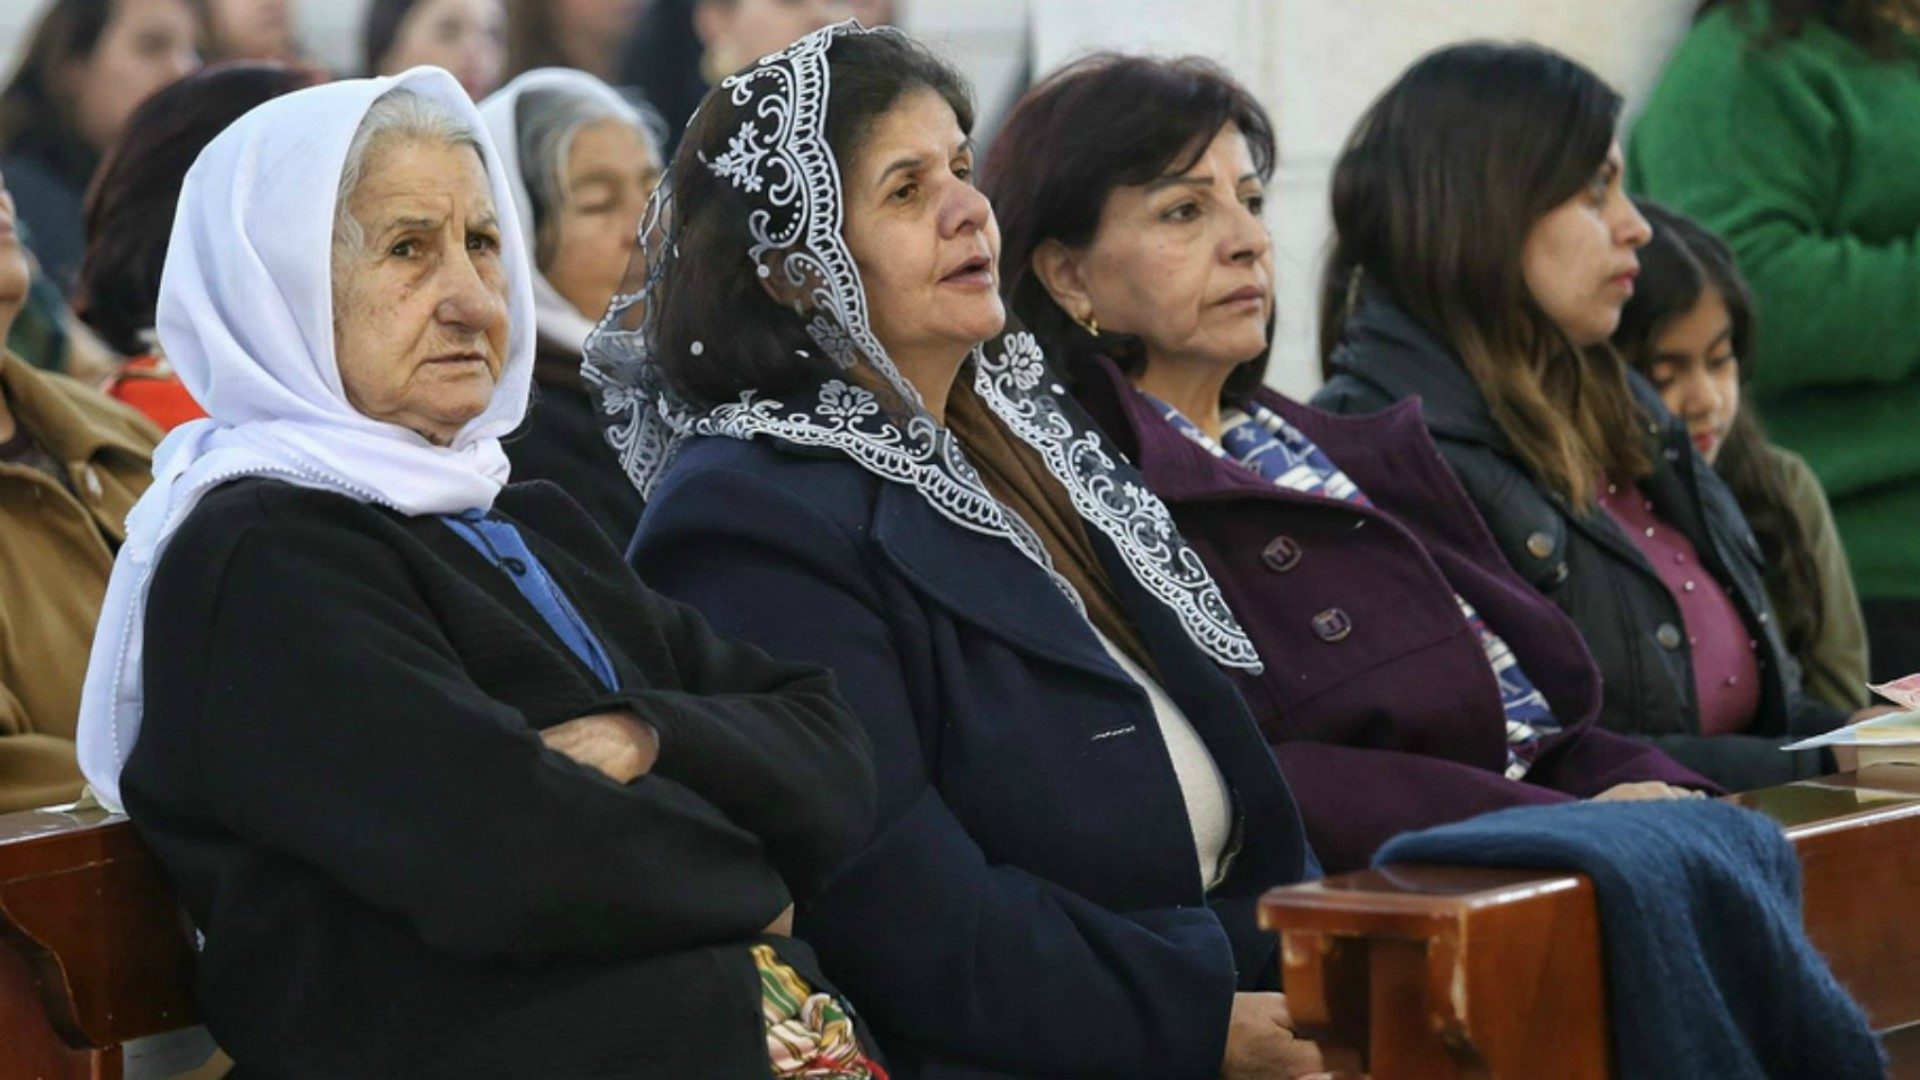 Beaucoup de chrétiens palestiniens veulent se rendre sur les lieux saints à Noël  |© ODAYDAIBES Patriarcat latin de Jérusalem